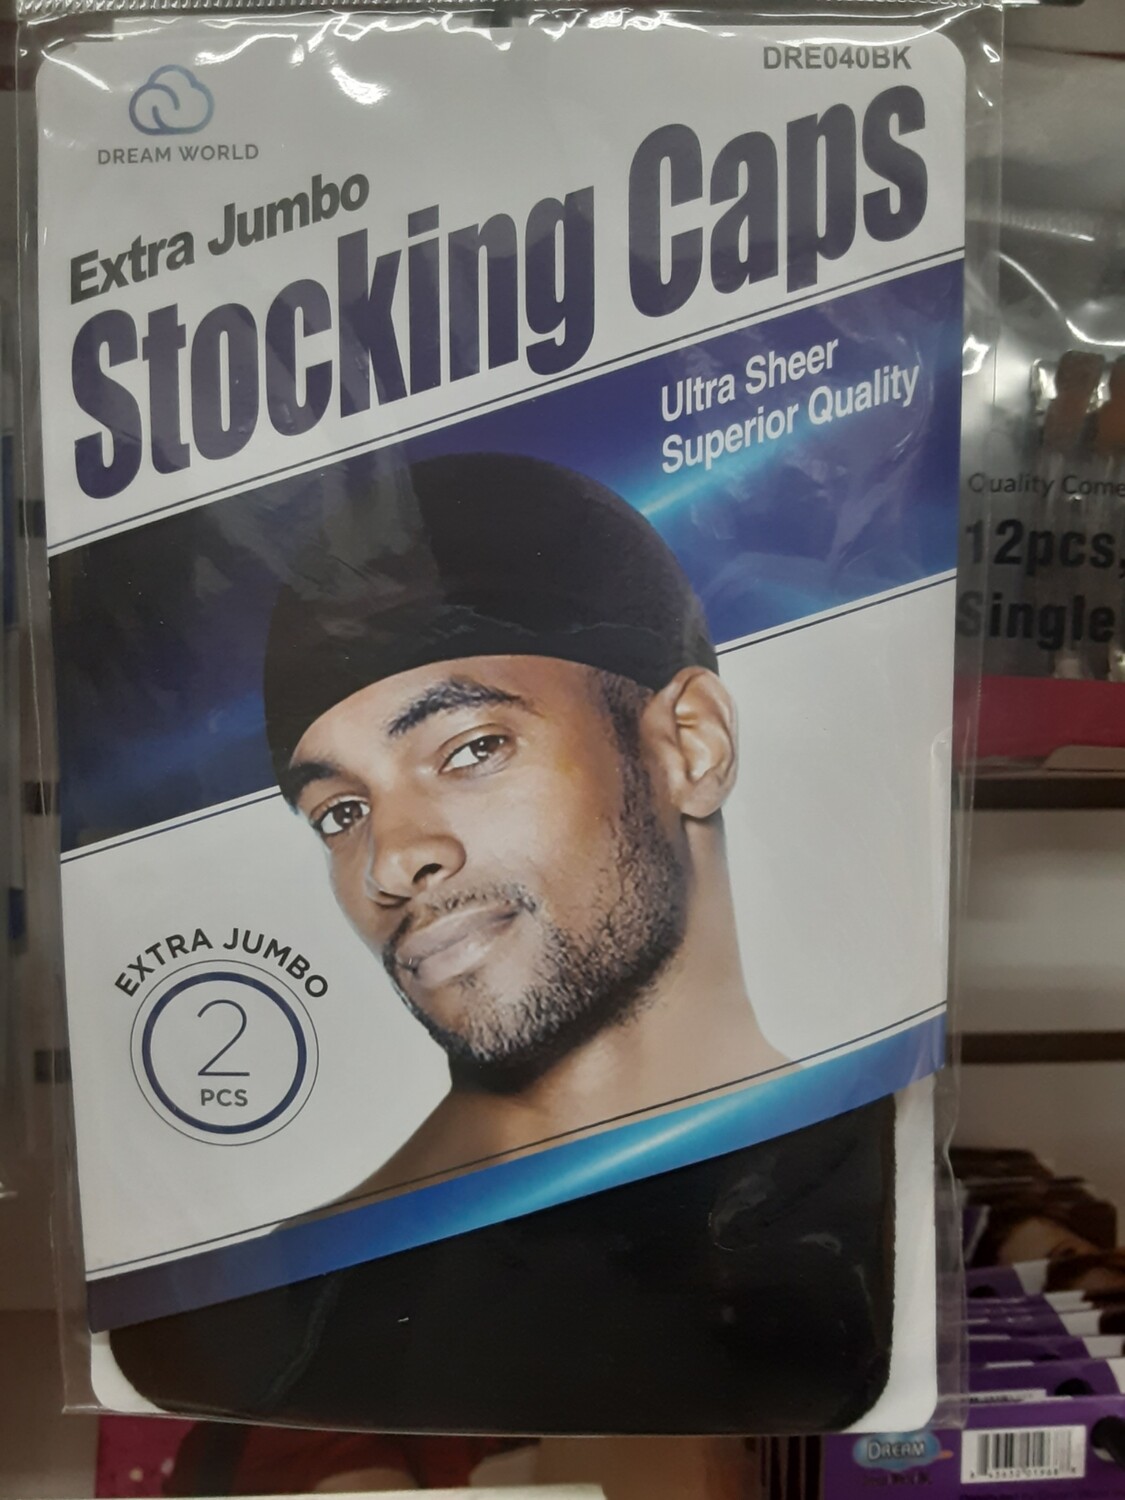 Extra jumbo stocking cap two packs